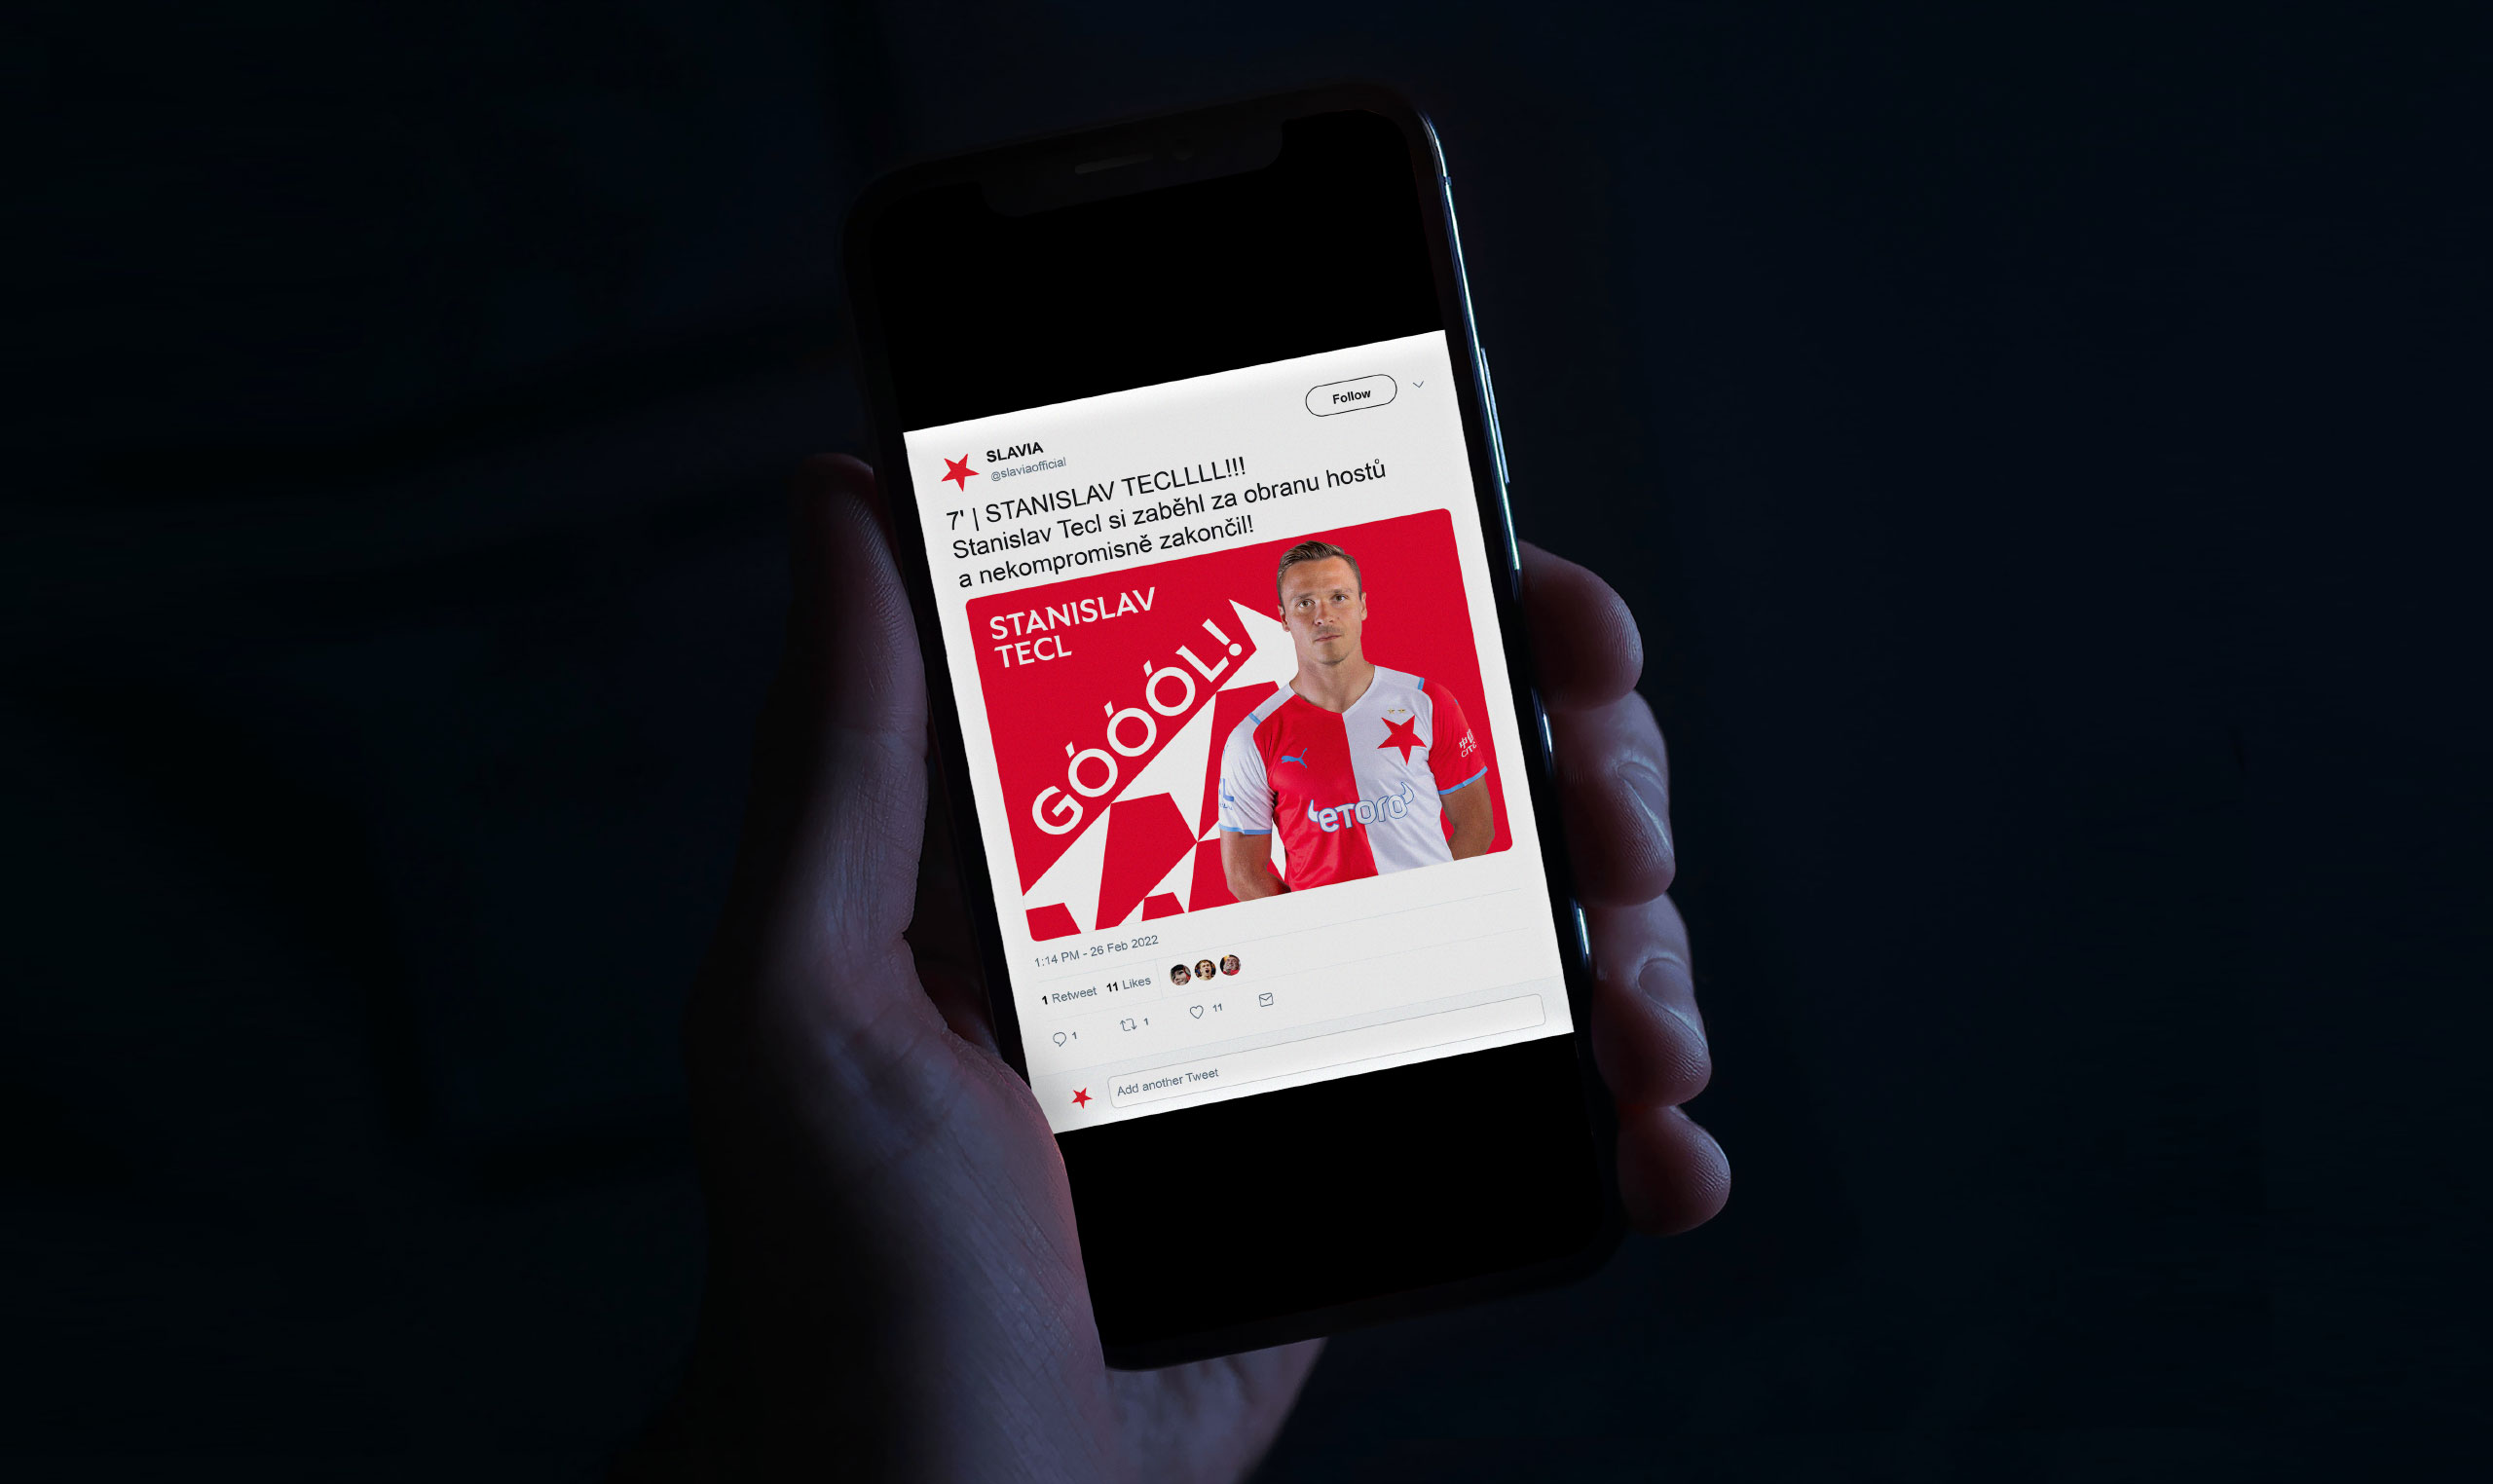 Slavia Rebranding - Social Media